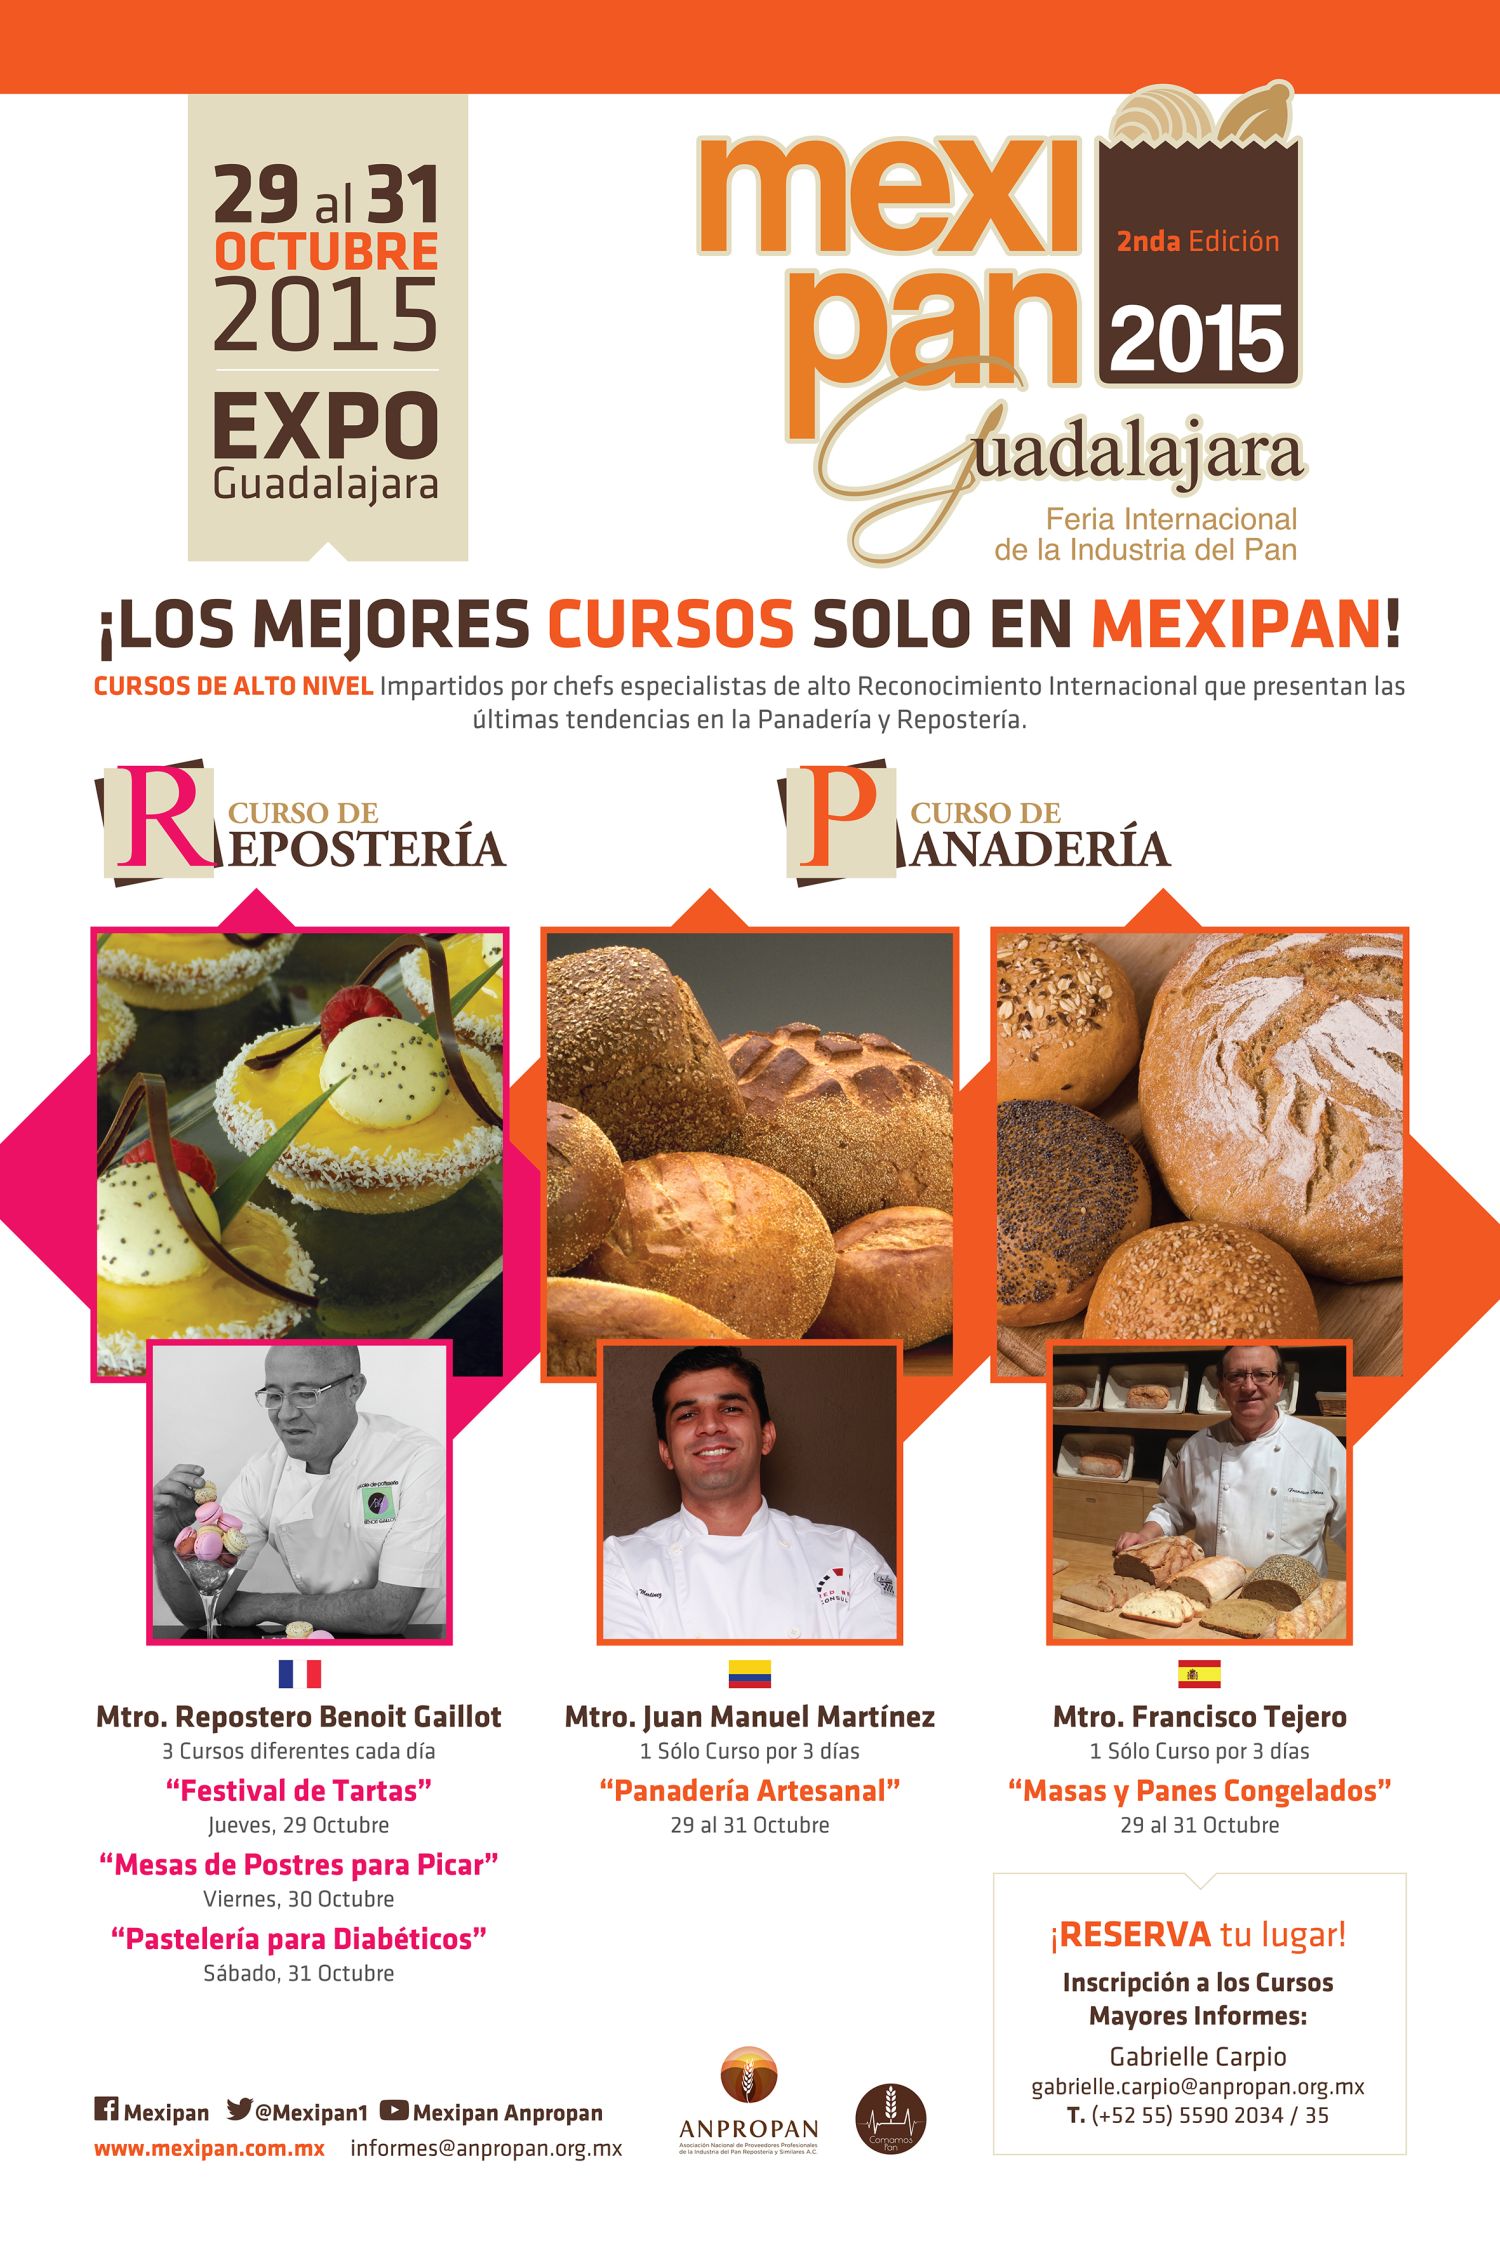 Cursos en Mexipan -Guadalajara 2015